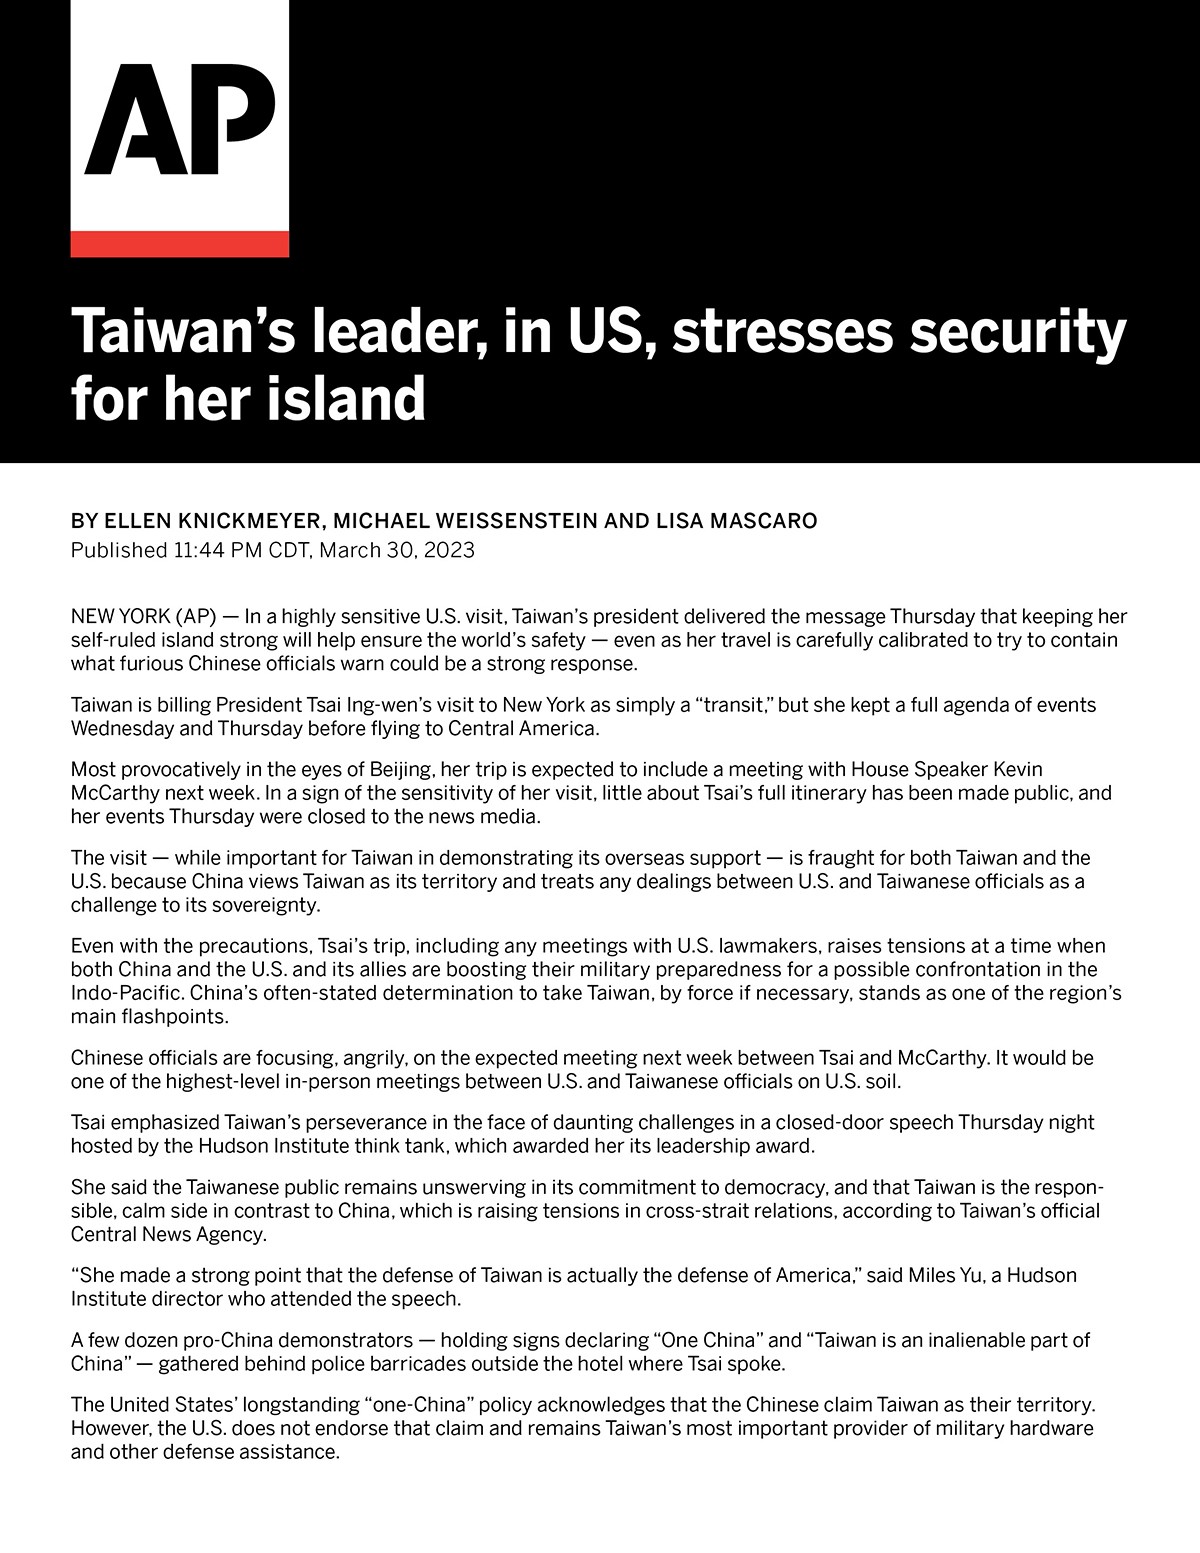 La Presidenta de Taiwán enfatiza la seguridad de Taiwán durante su visita en los EE. UU.